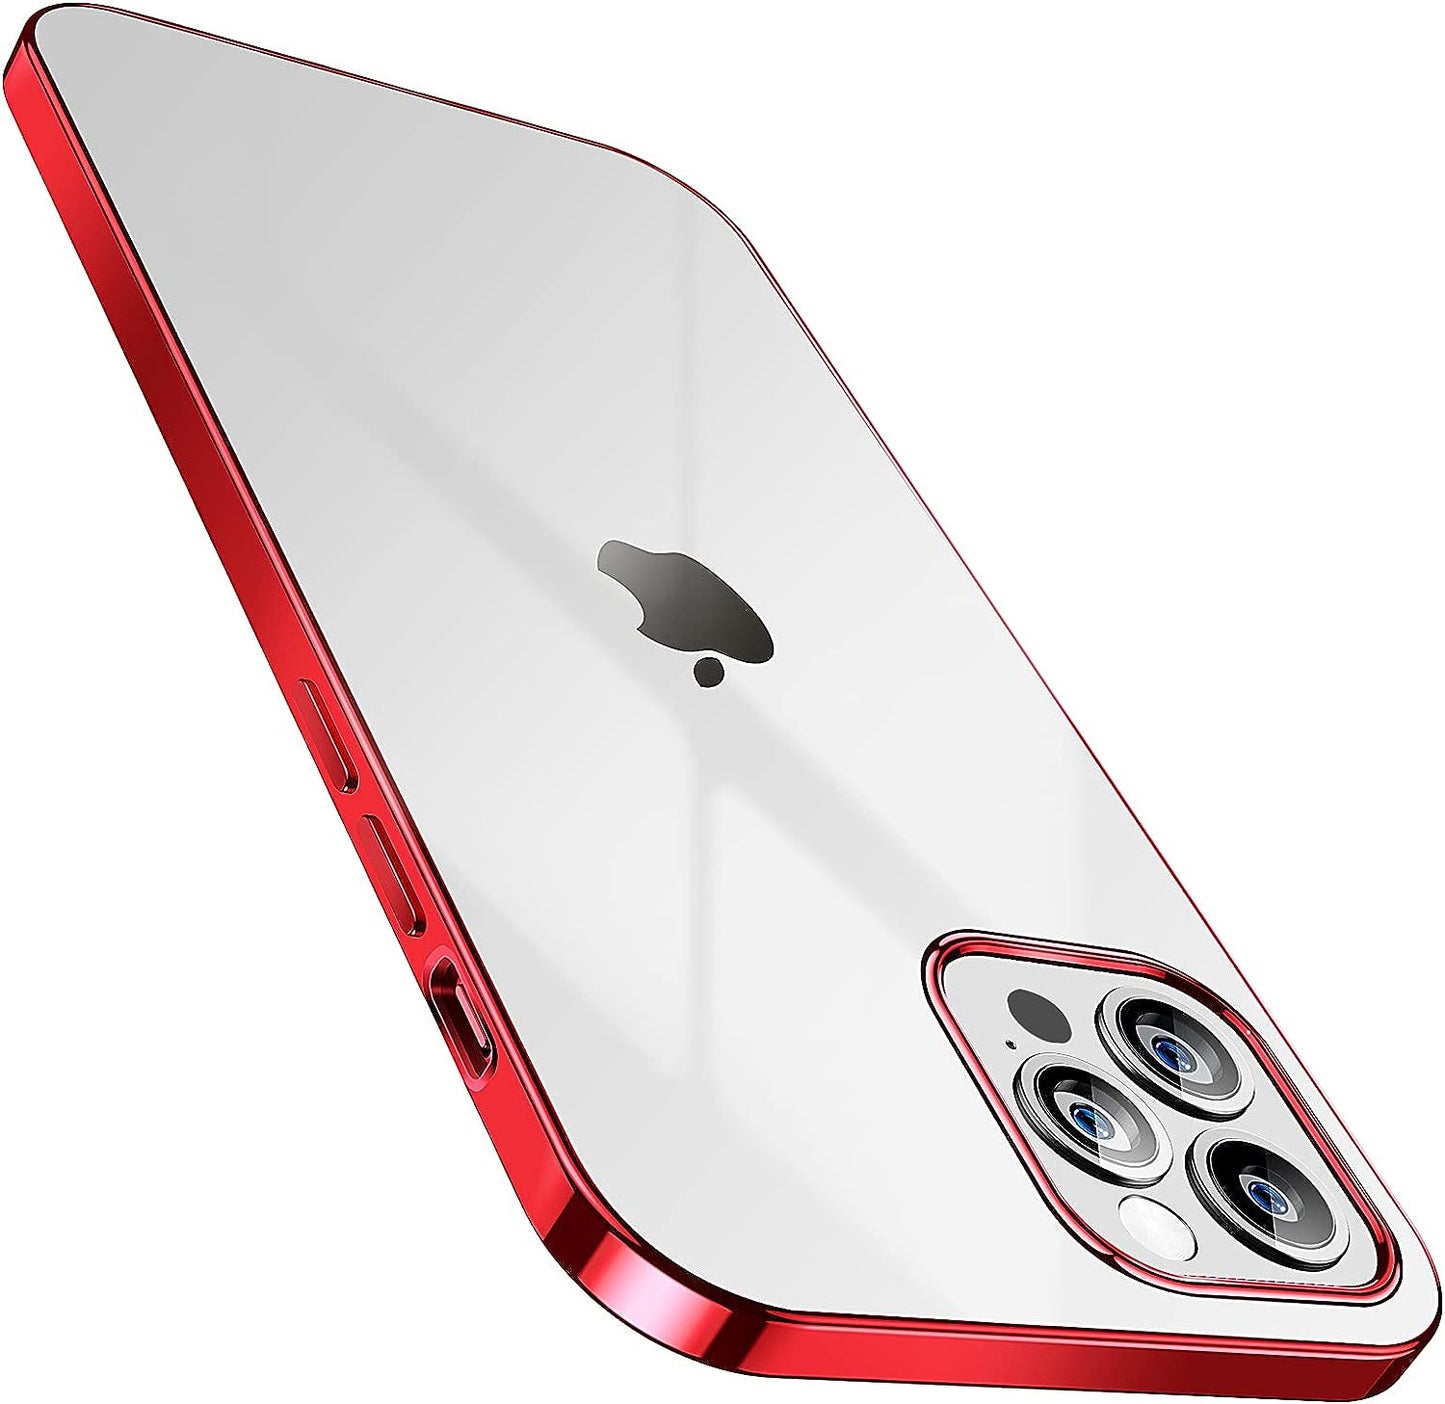 SMARTDEVIL Coque iPhone 12 Pro Max, Coque iPhone 12 Pro Max Transparente, AIR Cushion, Bumper Renforcé en TPU, Dos en PC, Protection Coin, Compatible avec iPhone 12 Pro Max - Argent